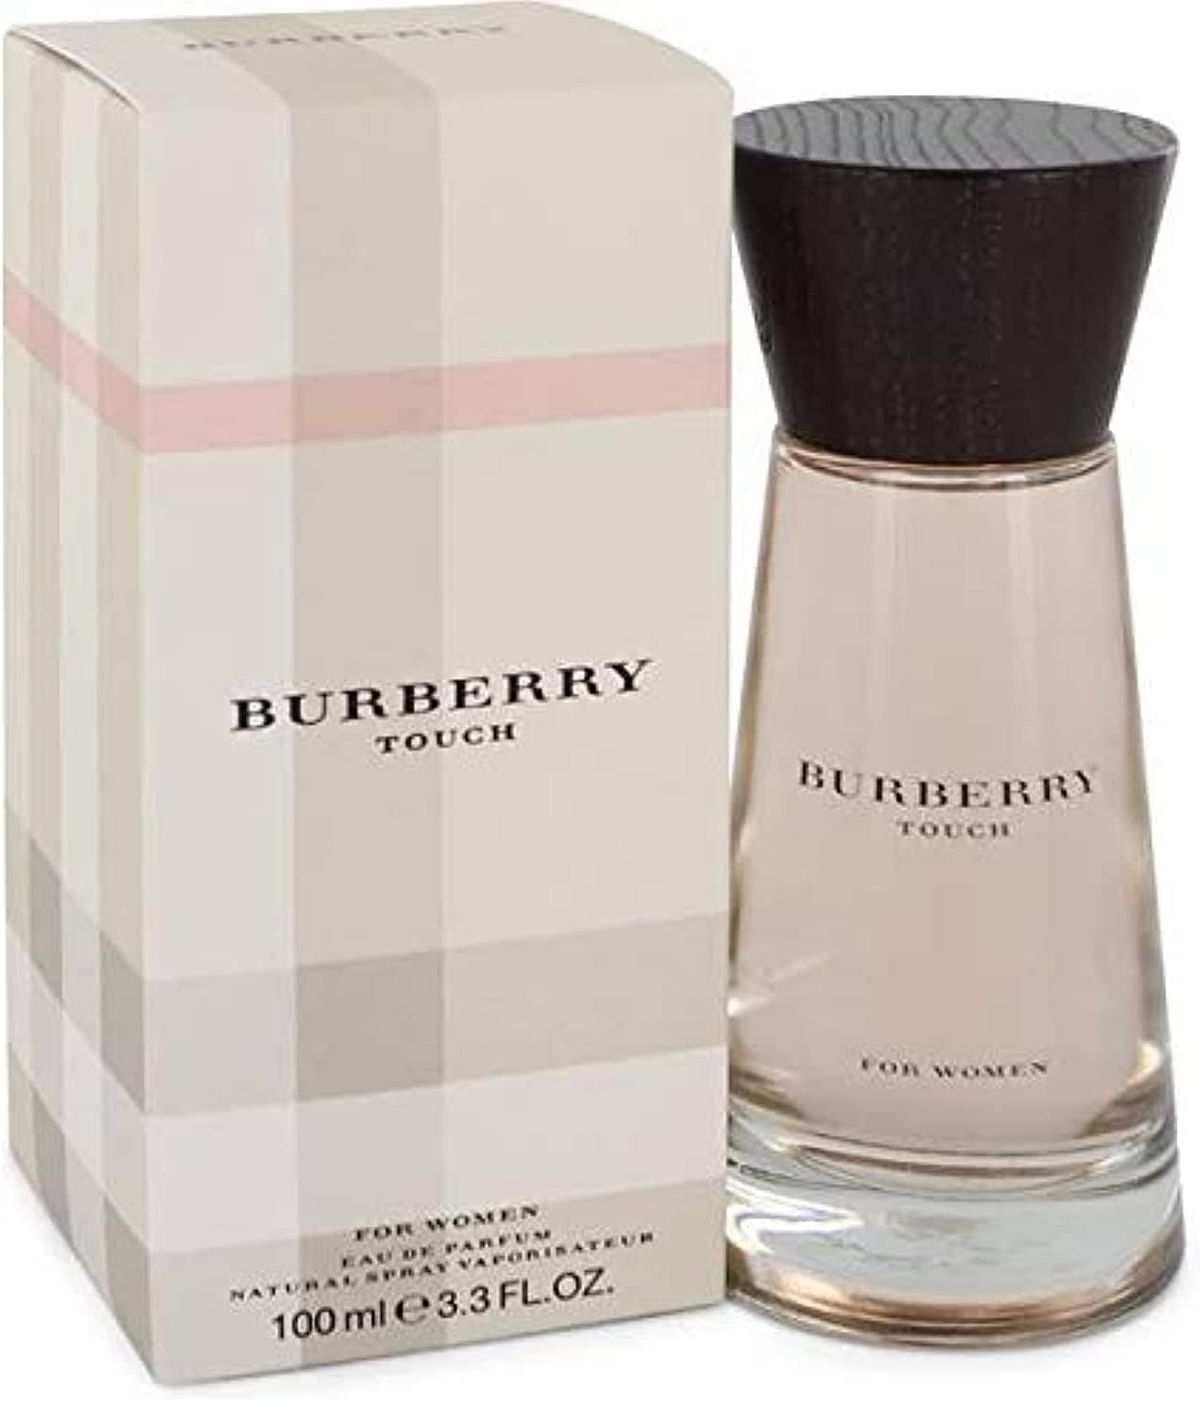 Touch by Burberry for Women - Eau de Parfum, 100ml